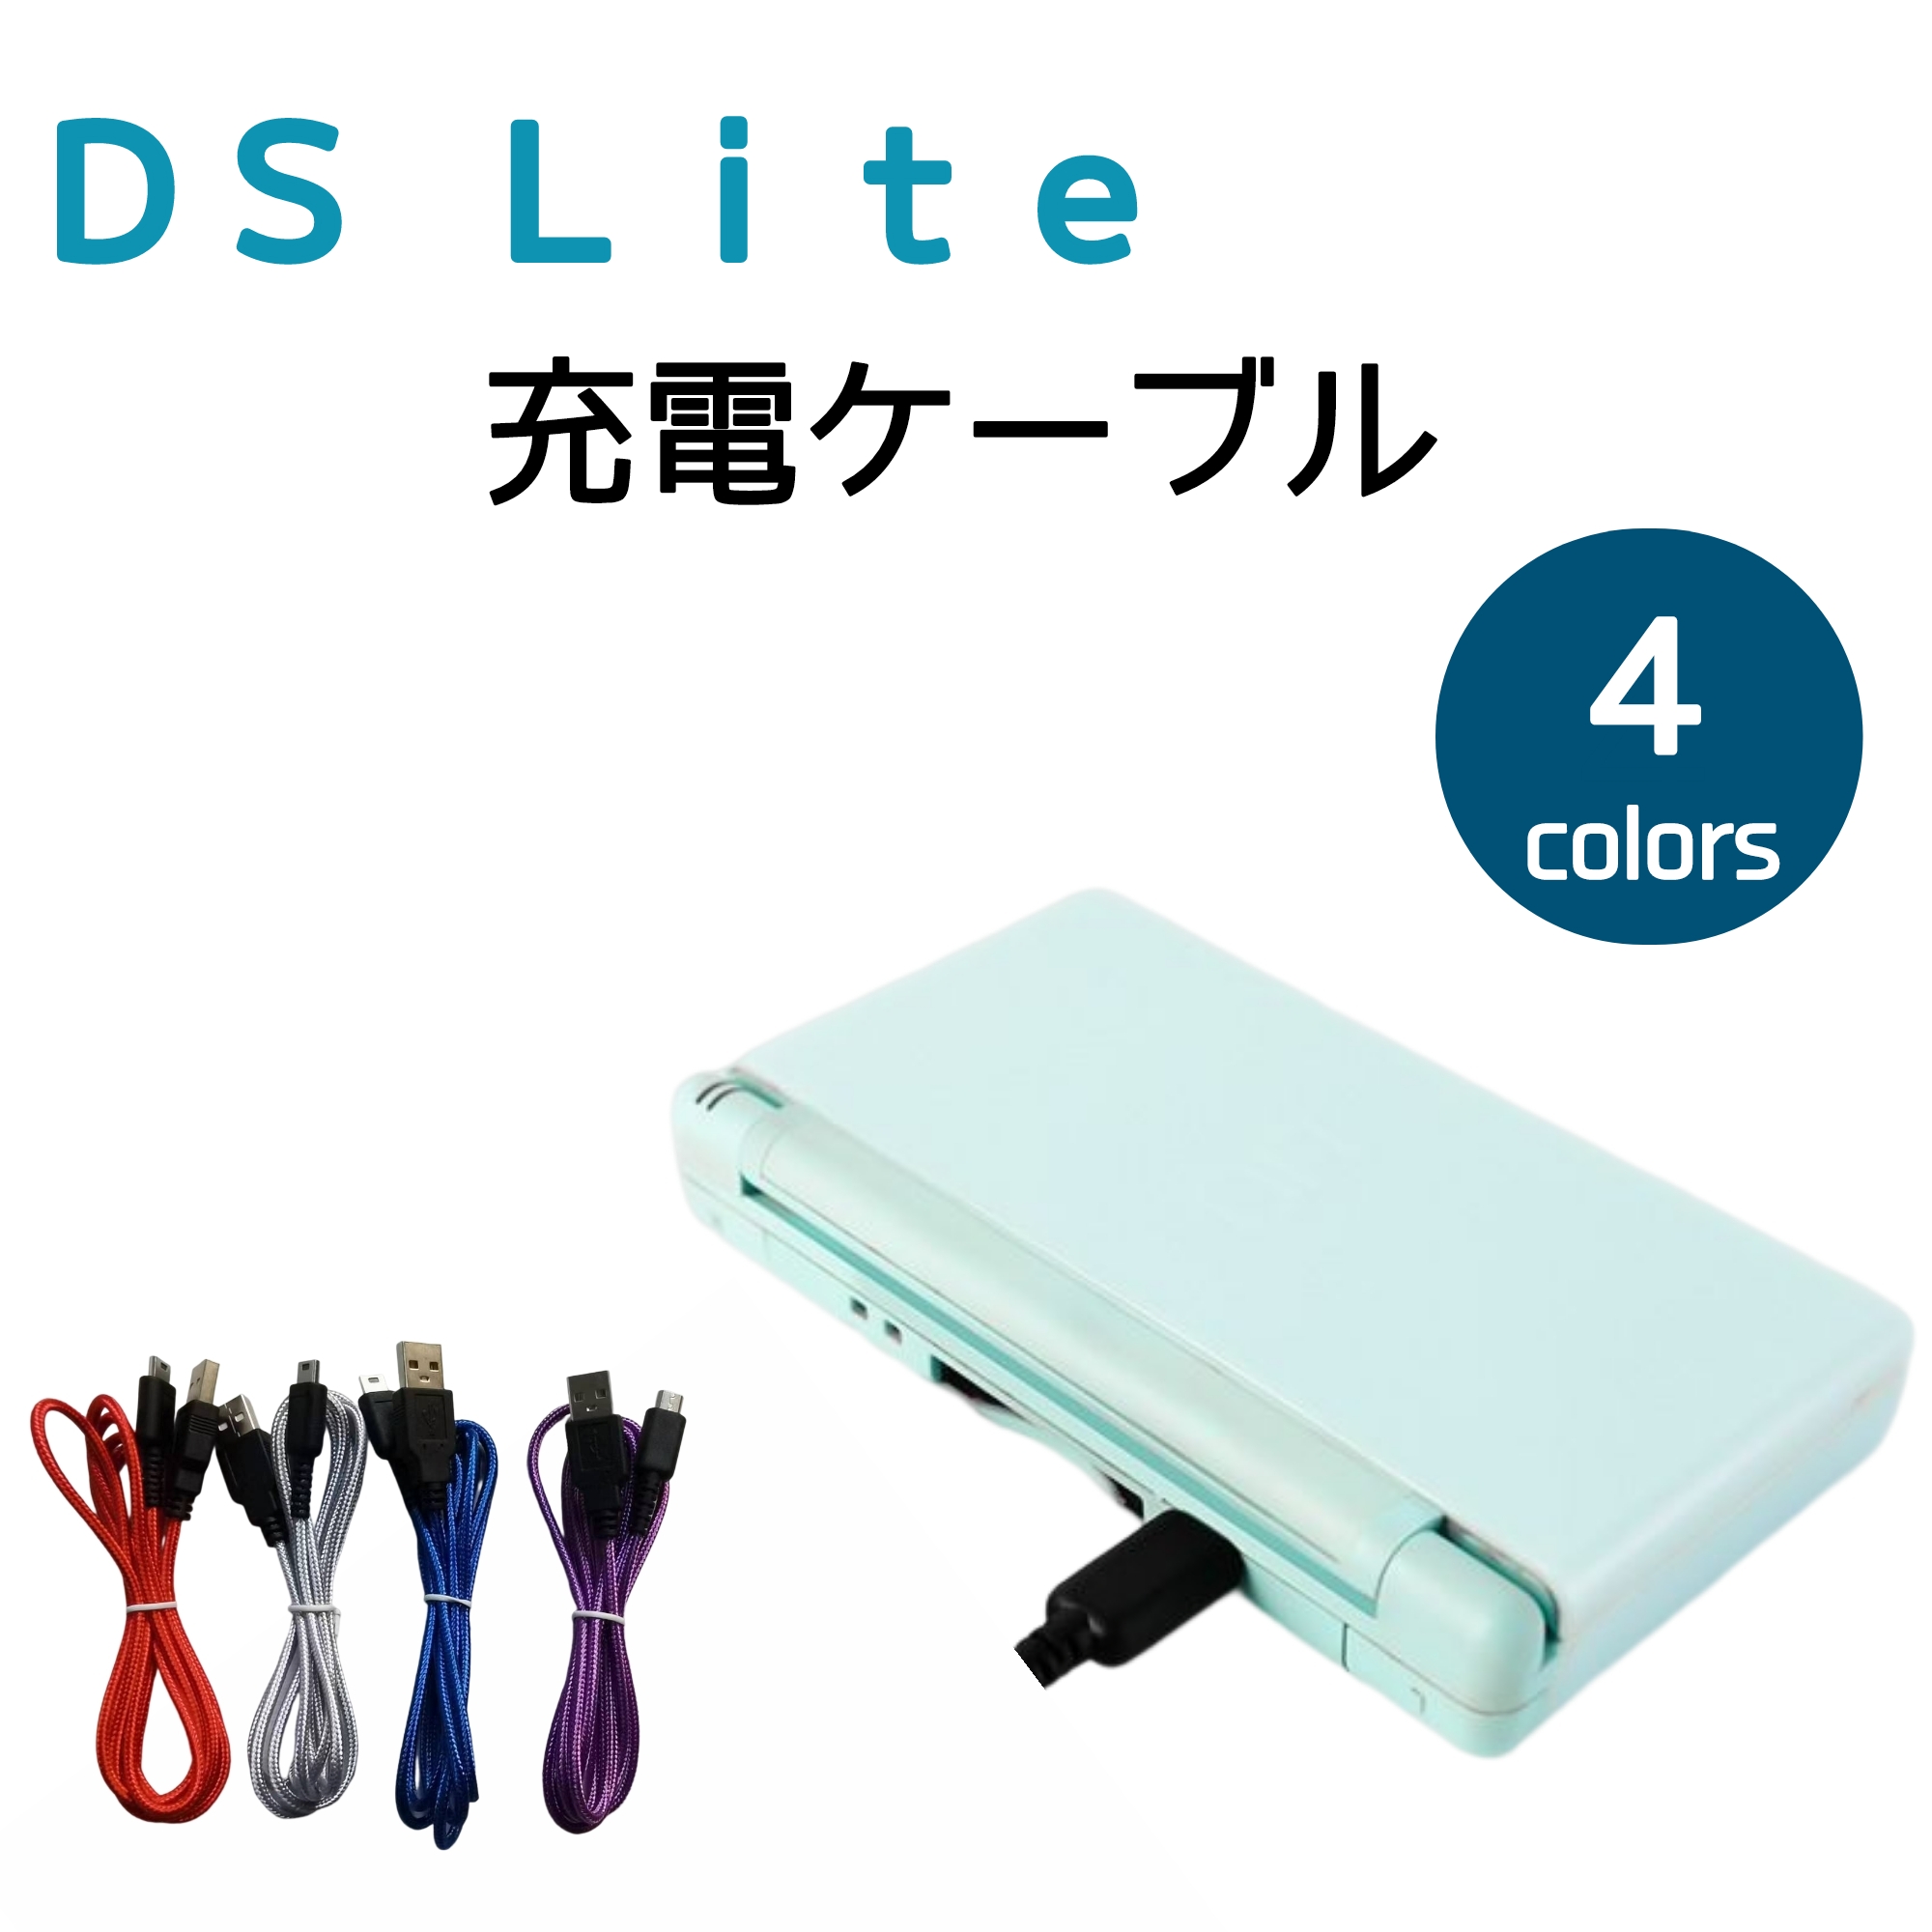 日本全国 送料無料 3DS New3DS 充電ケーブル 1.5m 2DS New2DS DSi New3DSLL New2DSLL 3DSLL  2DSLL DSiLL 充電器 断線しにくい ポイント消化 送料無料